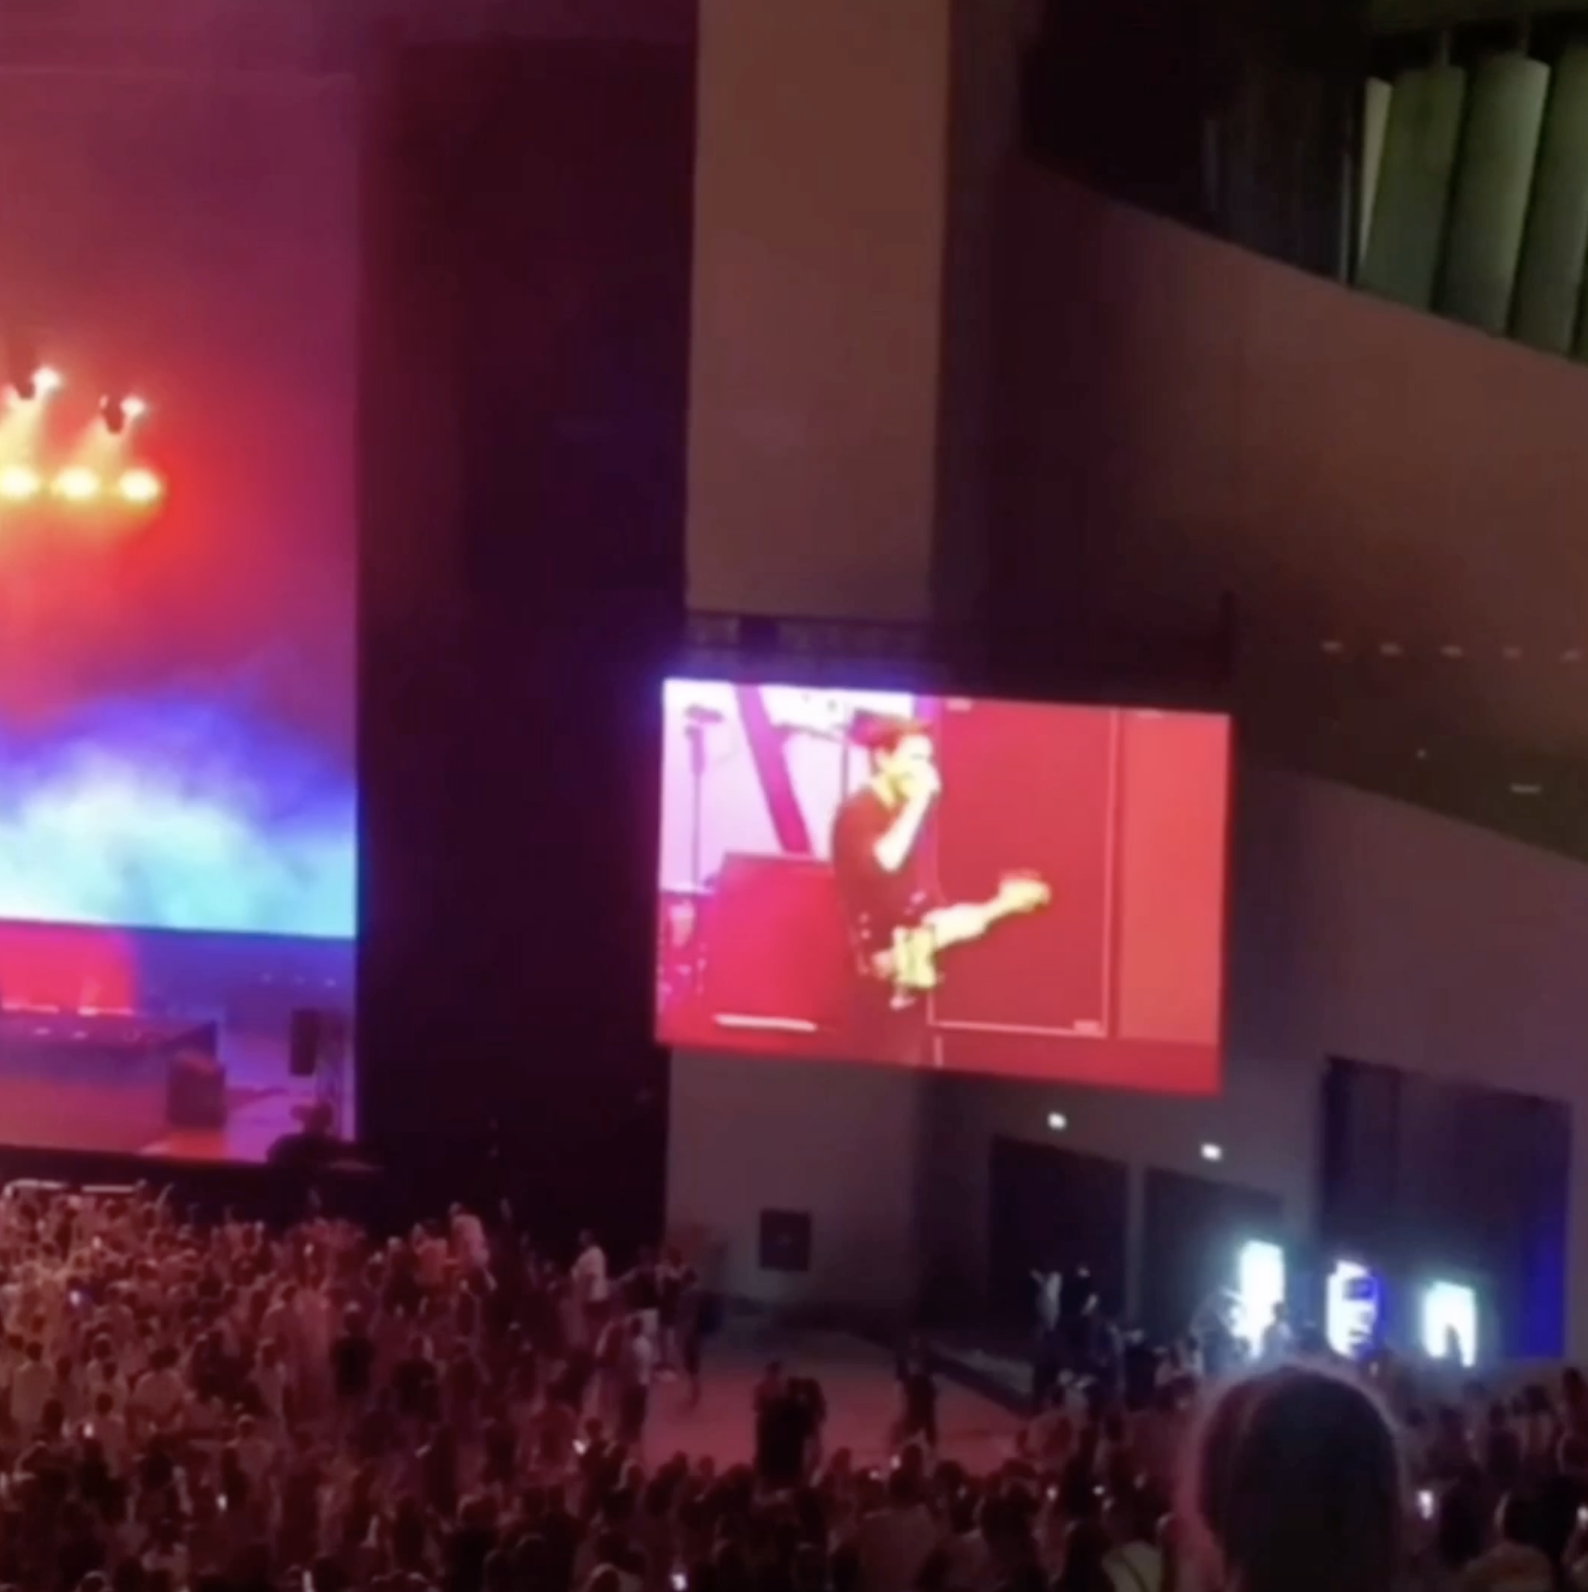 Засвистали і залишили зал: в Грузії глядачі зірвали концерт гурту The Killers через російського барабанщика на сцені. Відео